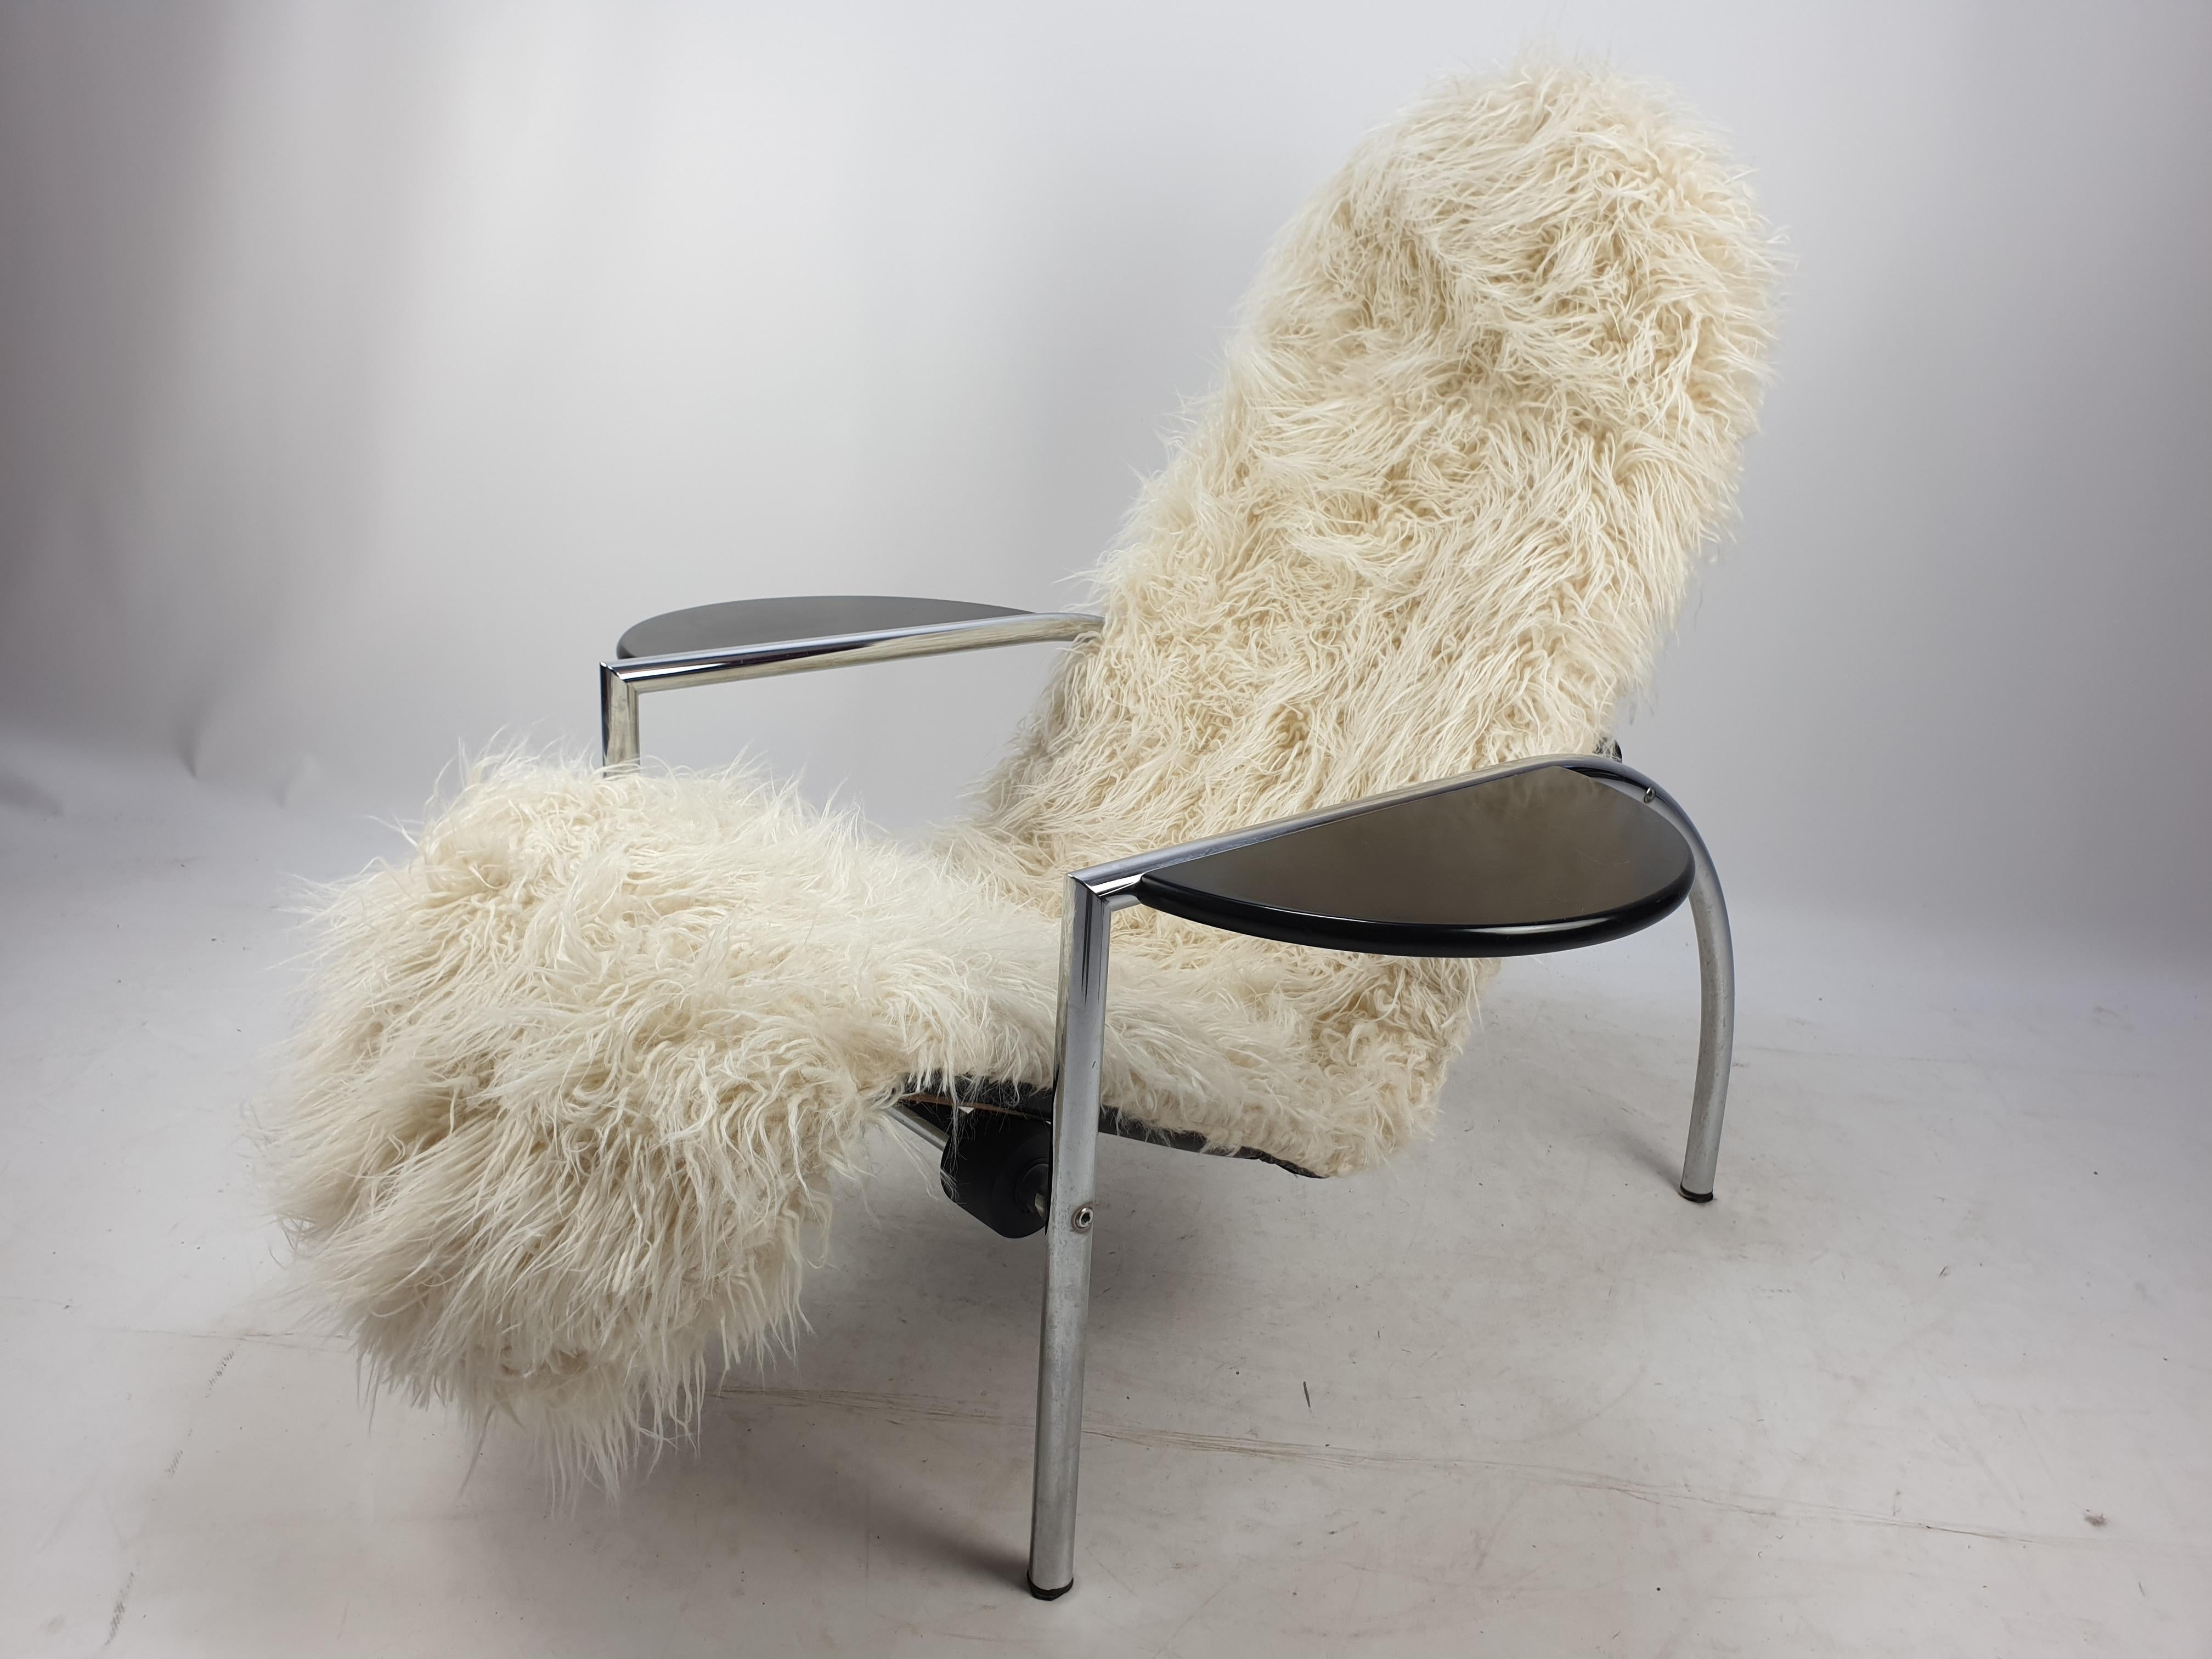 Äußerst seltener und sehr bequemer Sessel 'Noe', entworfen von Giampiero Vitelli und Titina Ammannati für Moroso. Der Stuhl hat ein verchromtes Metallgestell mit einem verstellbaren Sitz und Armlehnen aus Holz, die auch als Tische verwendet werden